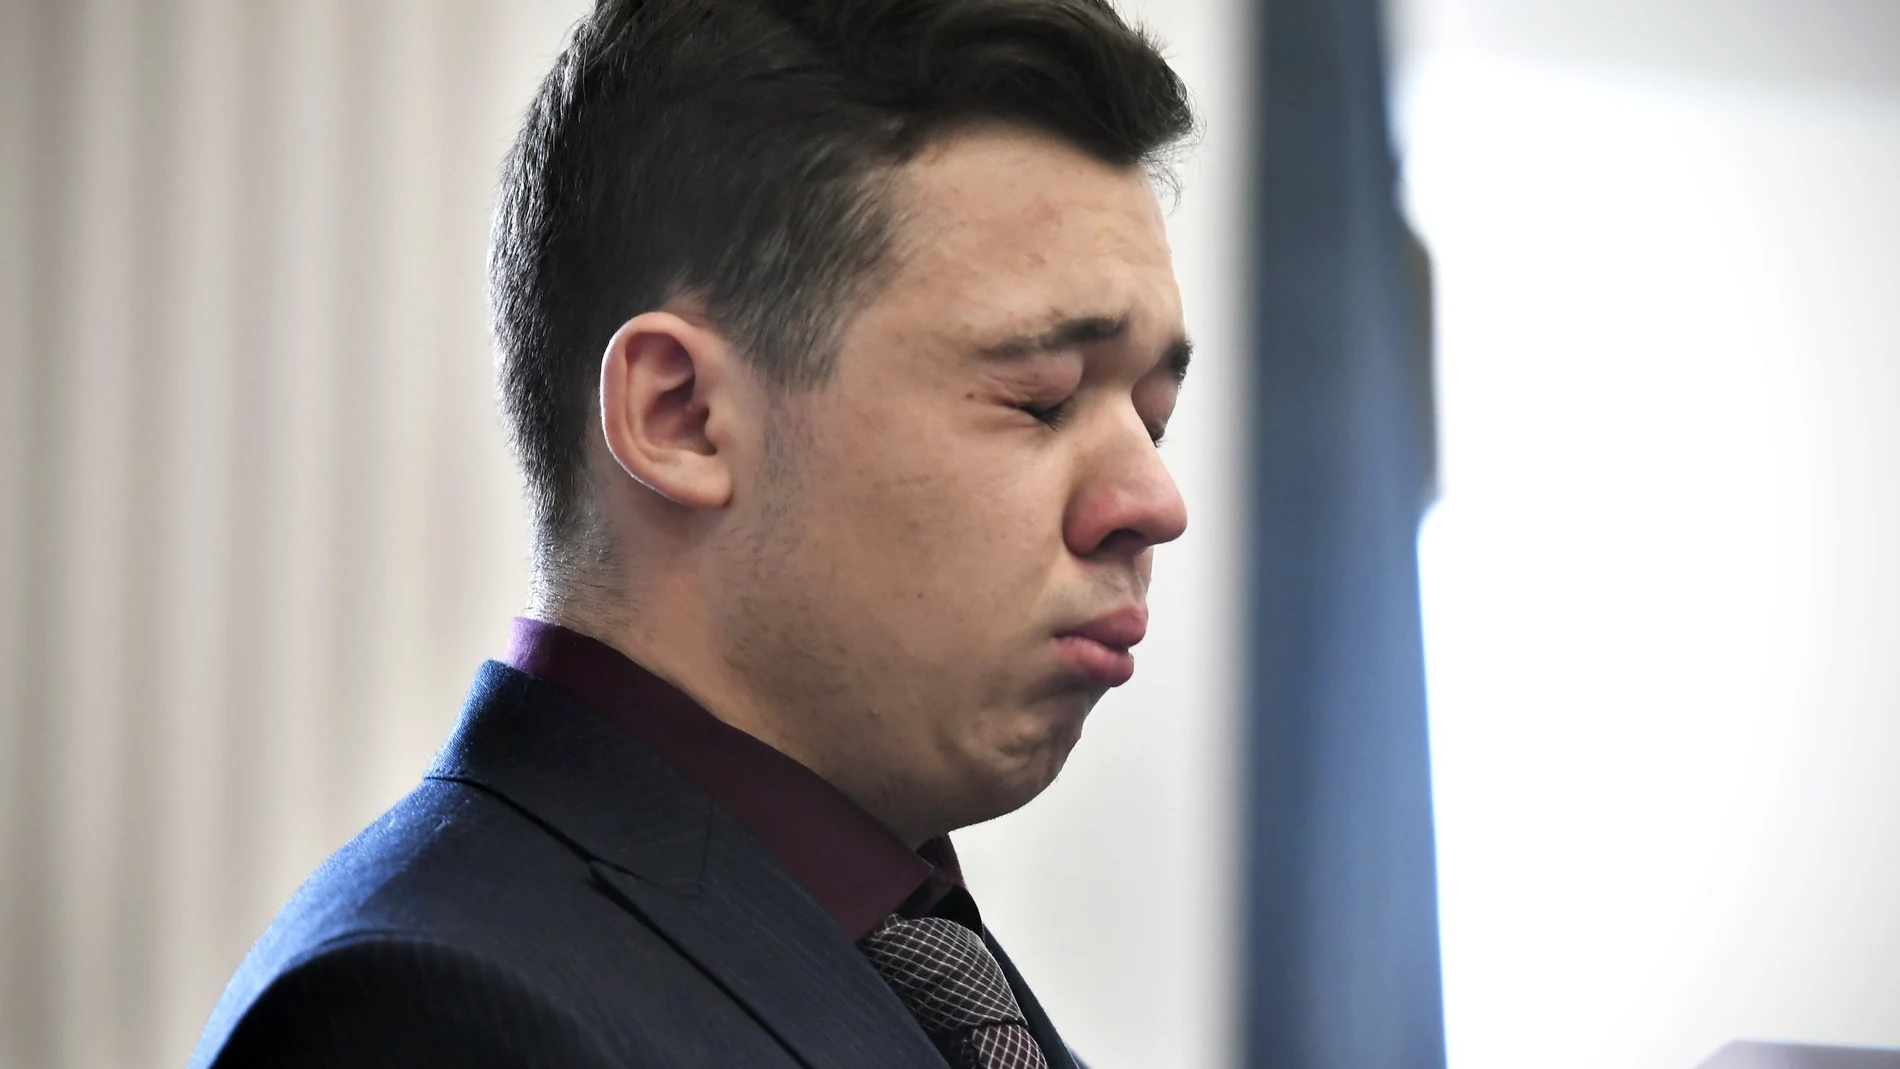 Kyle Rittenhouse cierra los ojos y se pone a llorar tras conocer el veredicto del jurado que le declaró inocente de cinco cargos, tres de asesinato